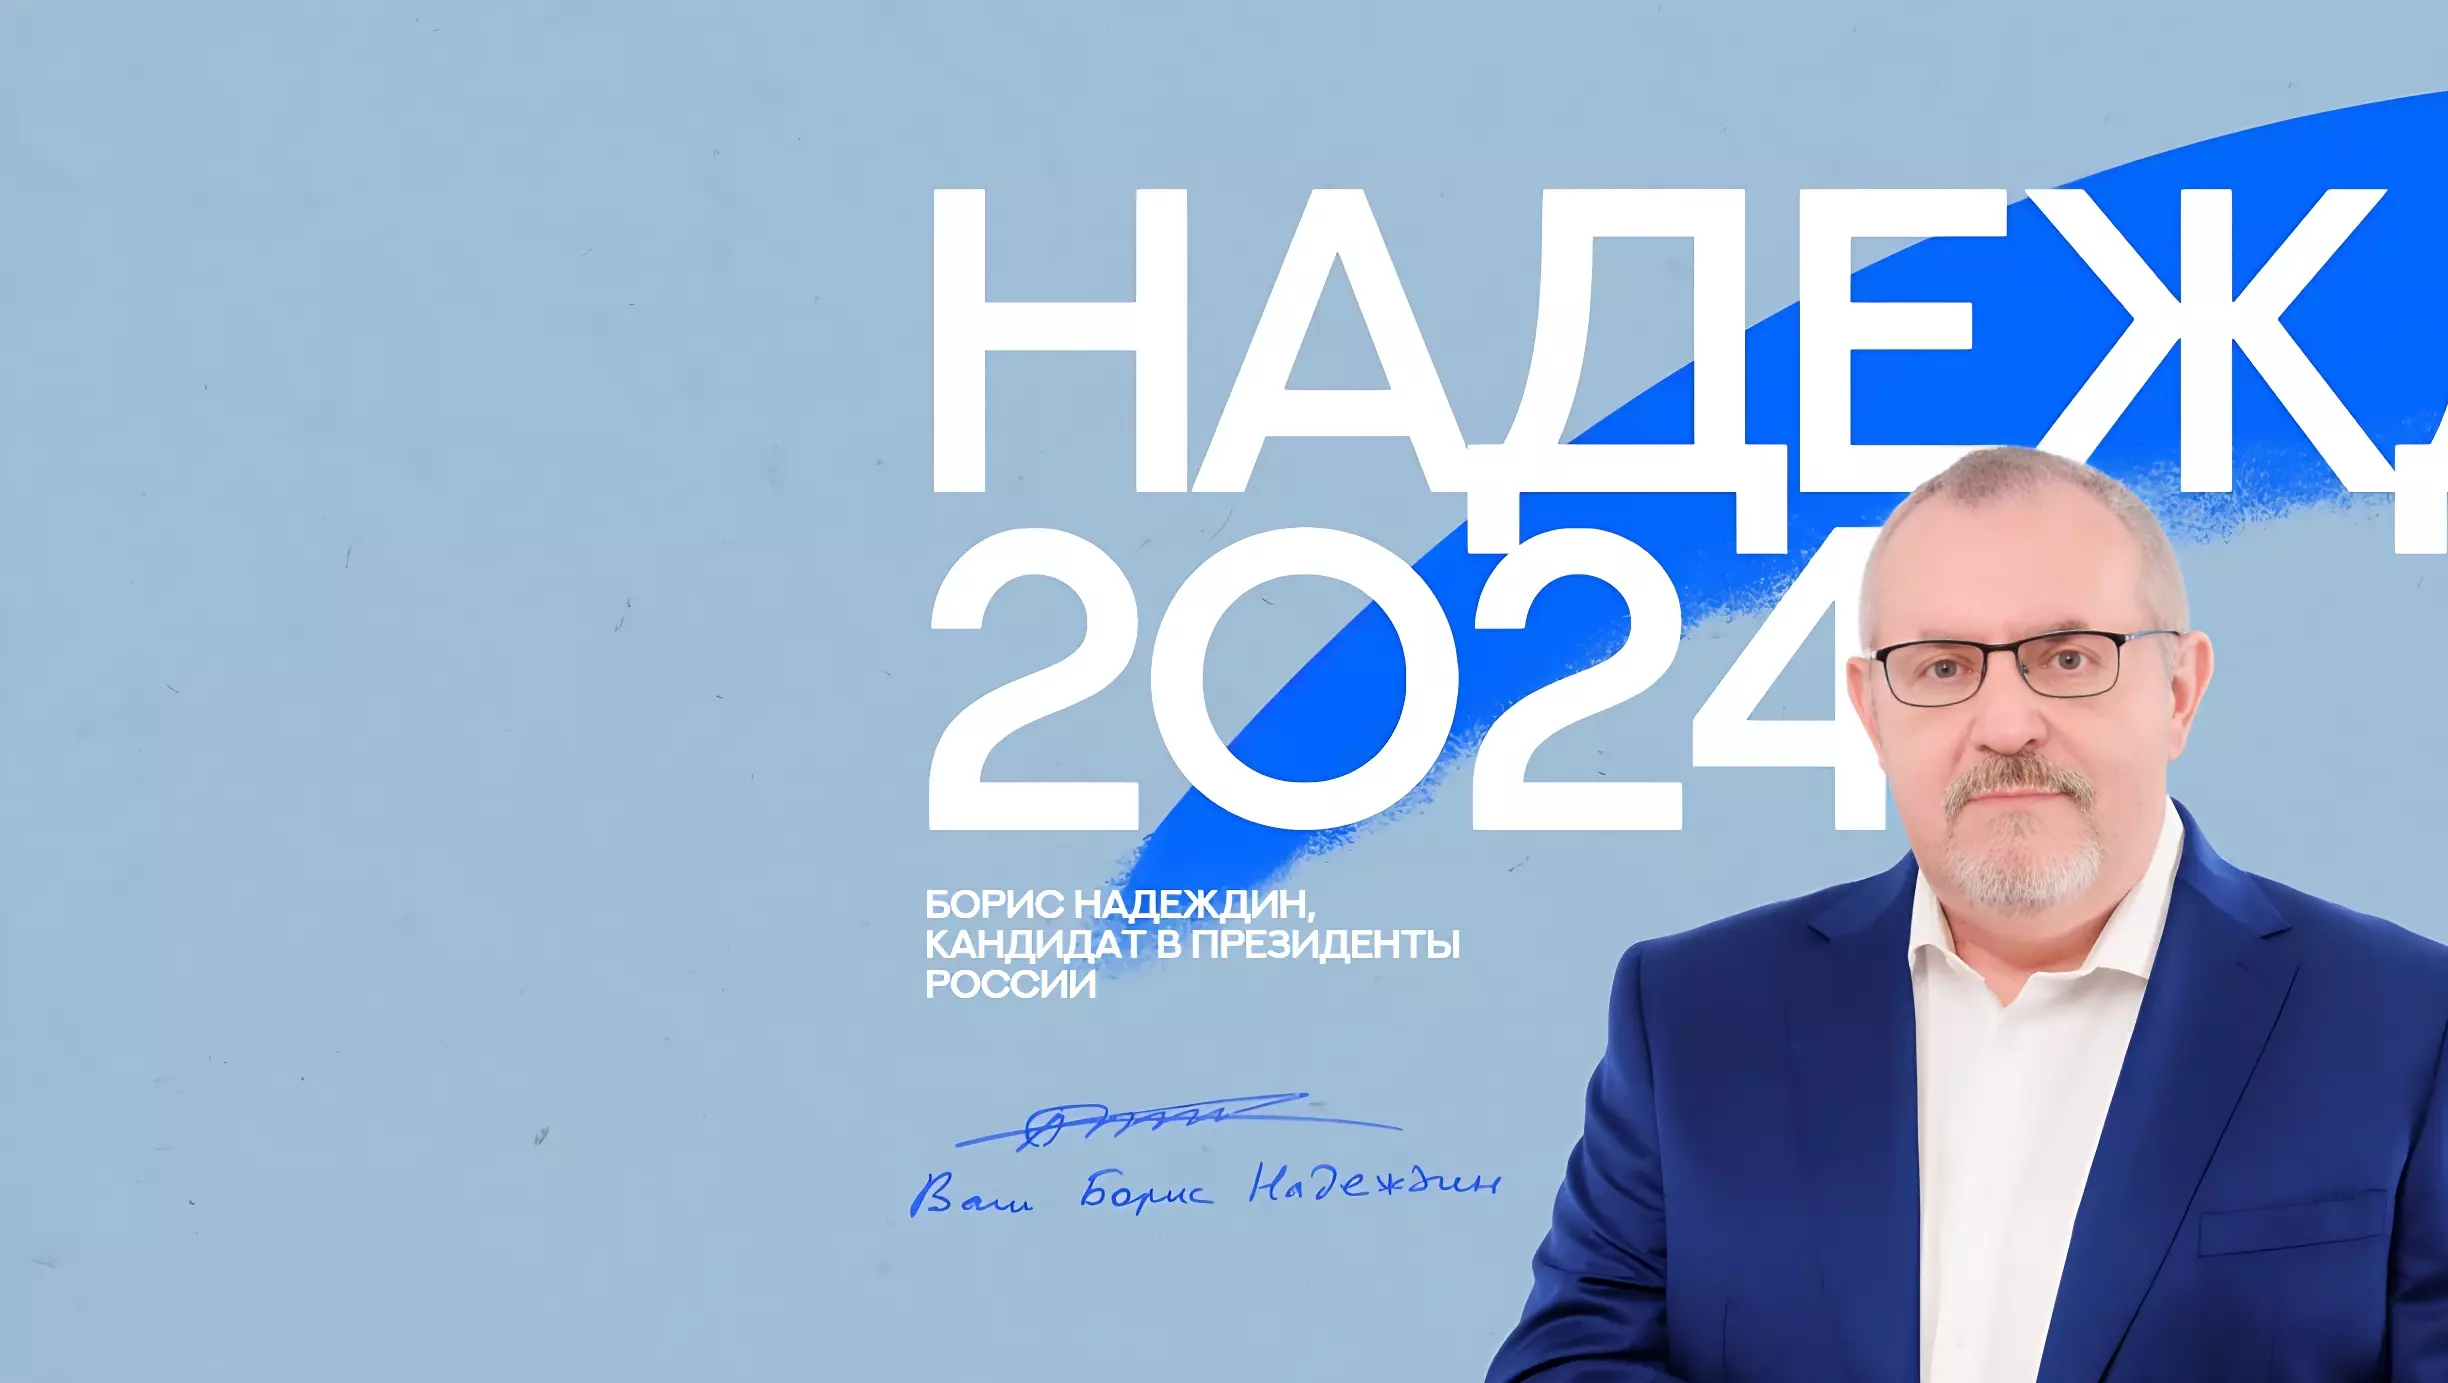 ЦИК отказала Борису Надеждину в регистрации в качестве кандидата в президенты России